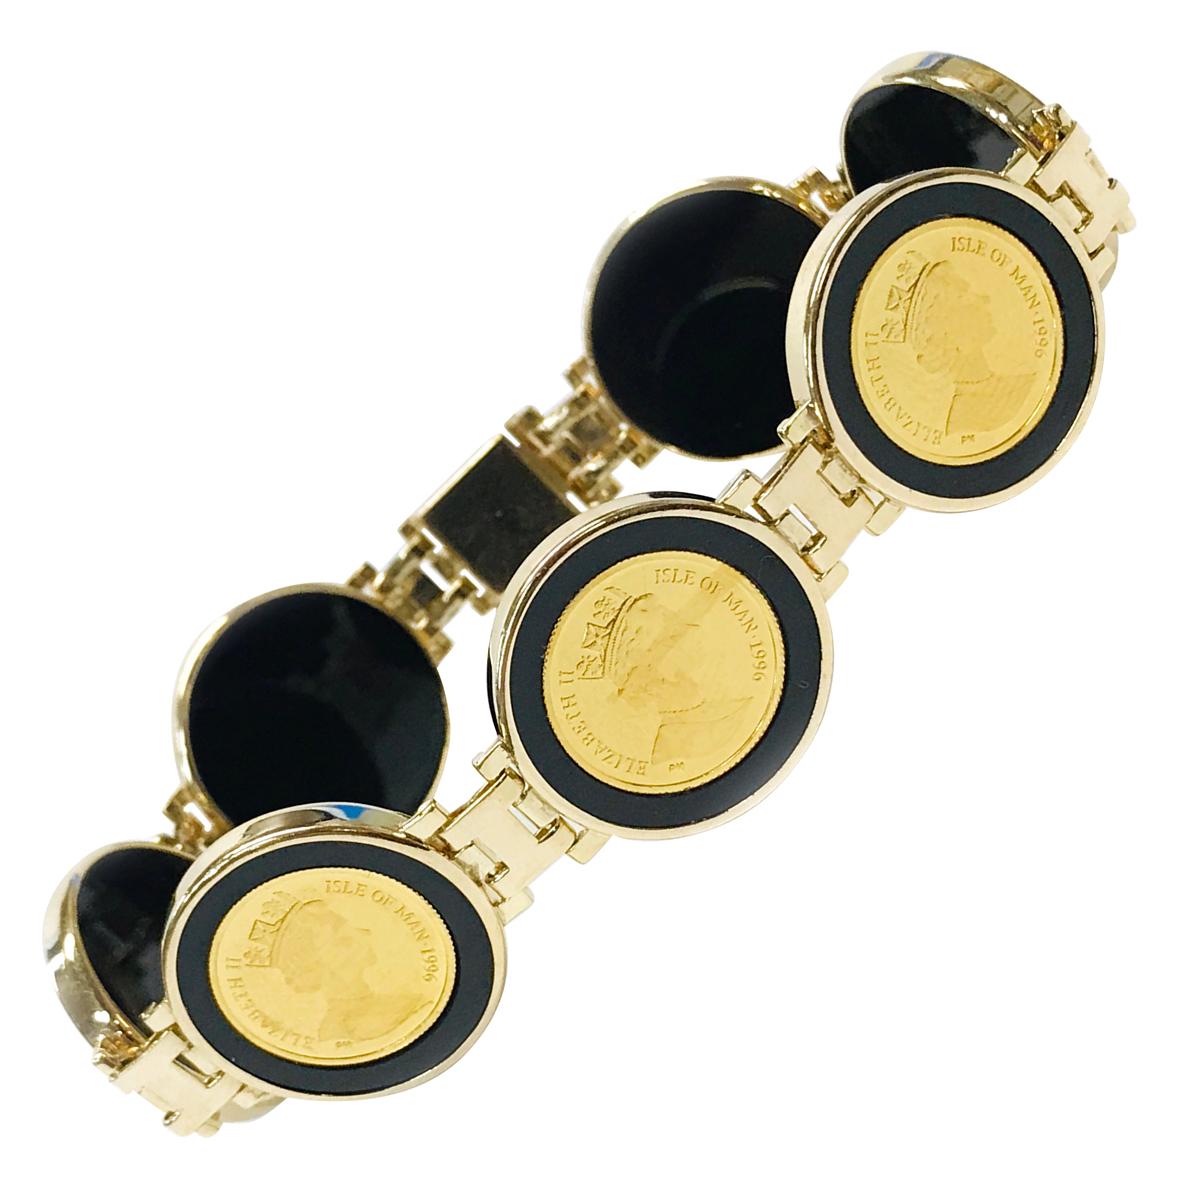 FOXJWEL Cameo Bracelet Queen Her Majesty Link Bracelet Elizabeth Coin Jewelry for Women 